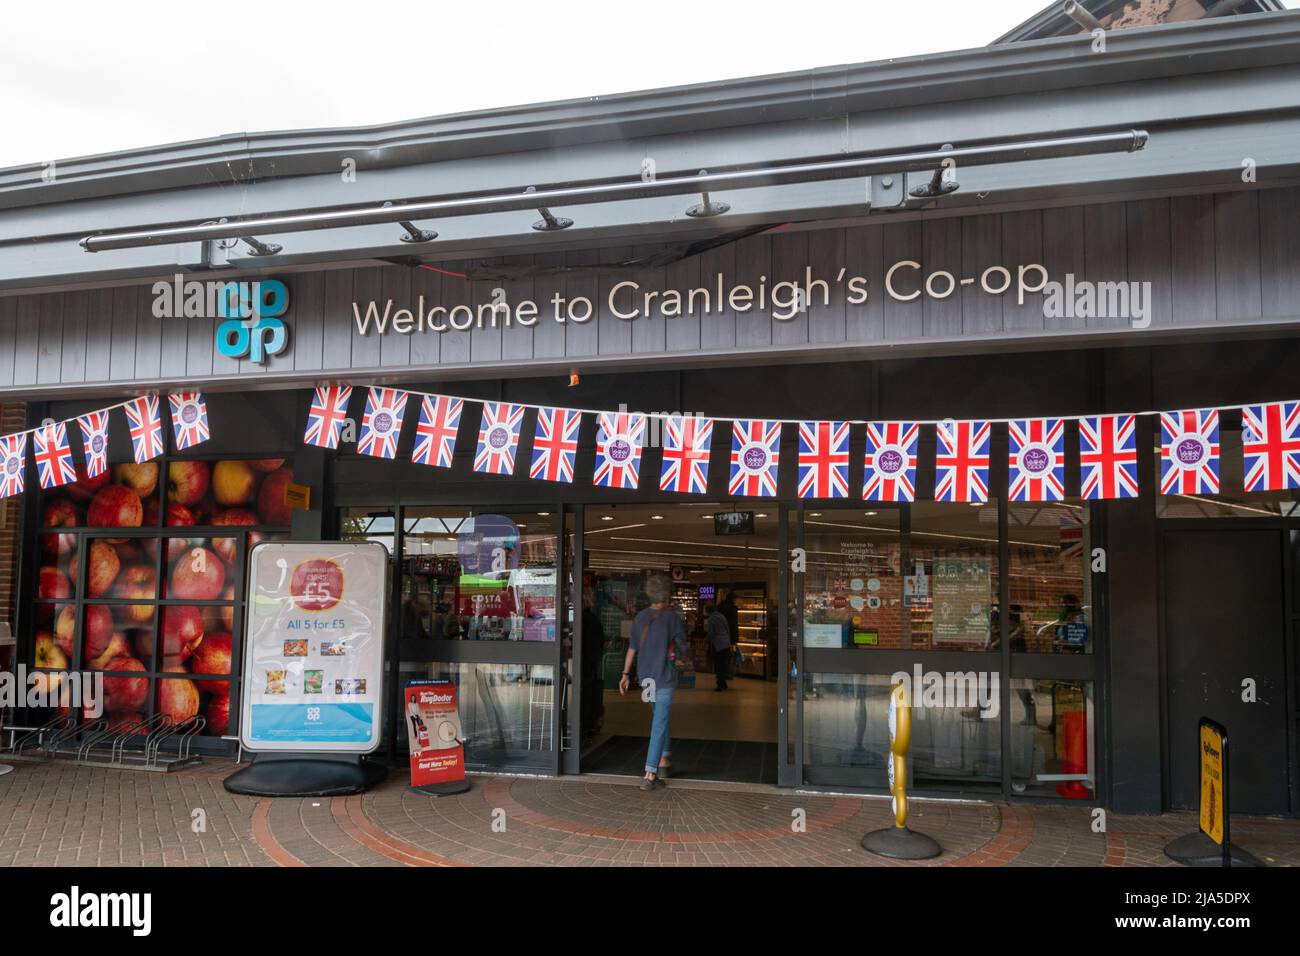 Queen Elizabeth II Platinum Jubilee bunting, Cranleigh Co-op supermarket decorations, Surrey, England, UK, 2022 Stock Photo